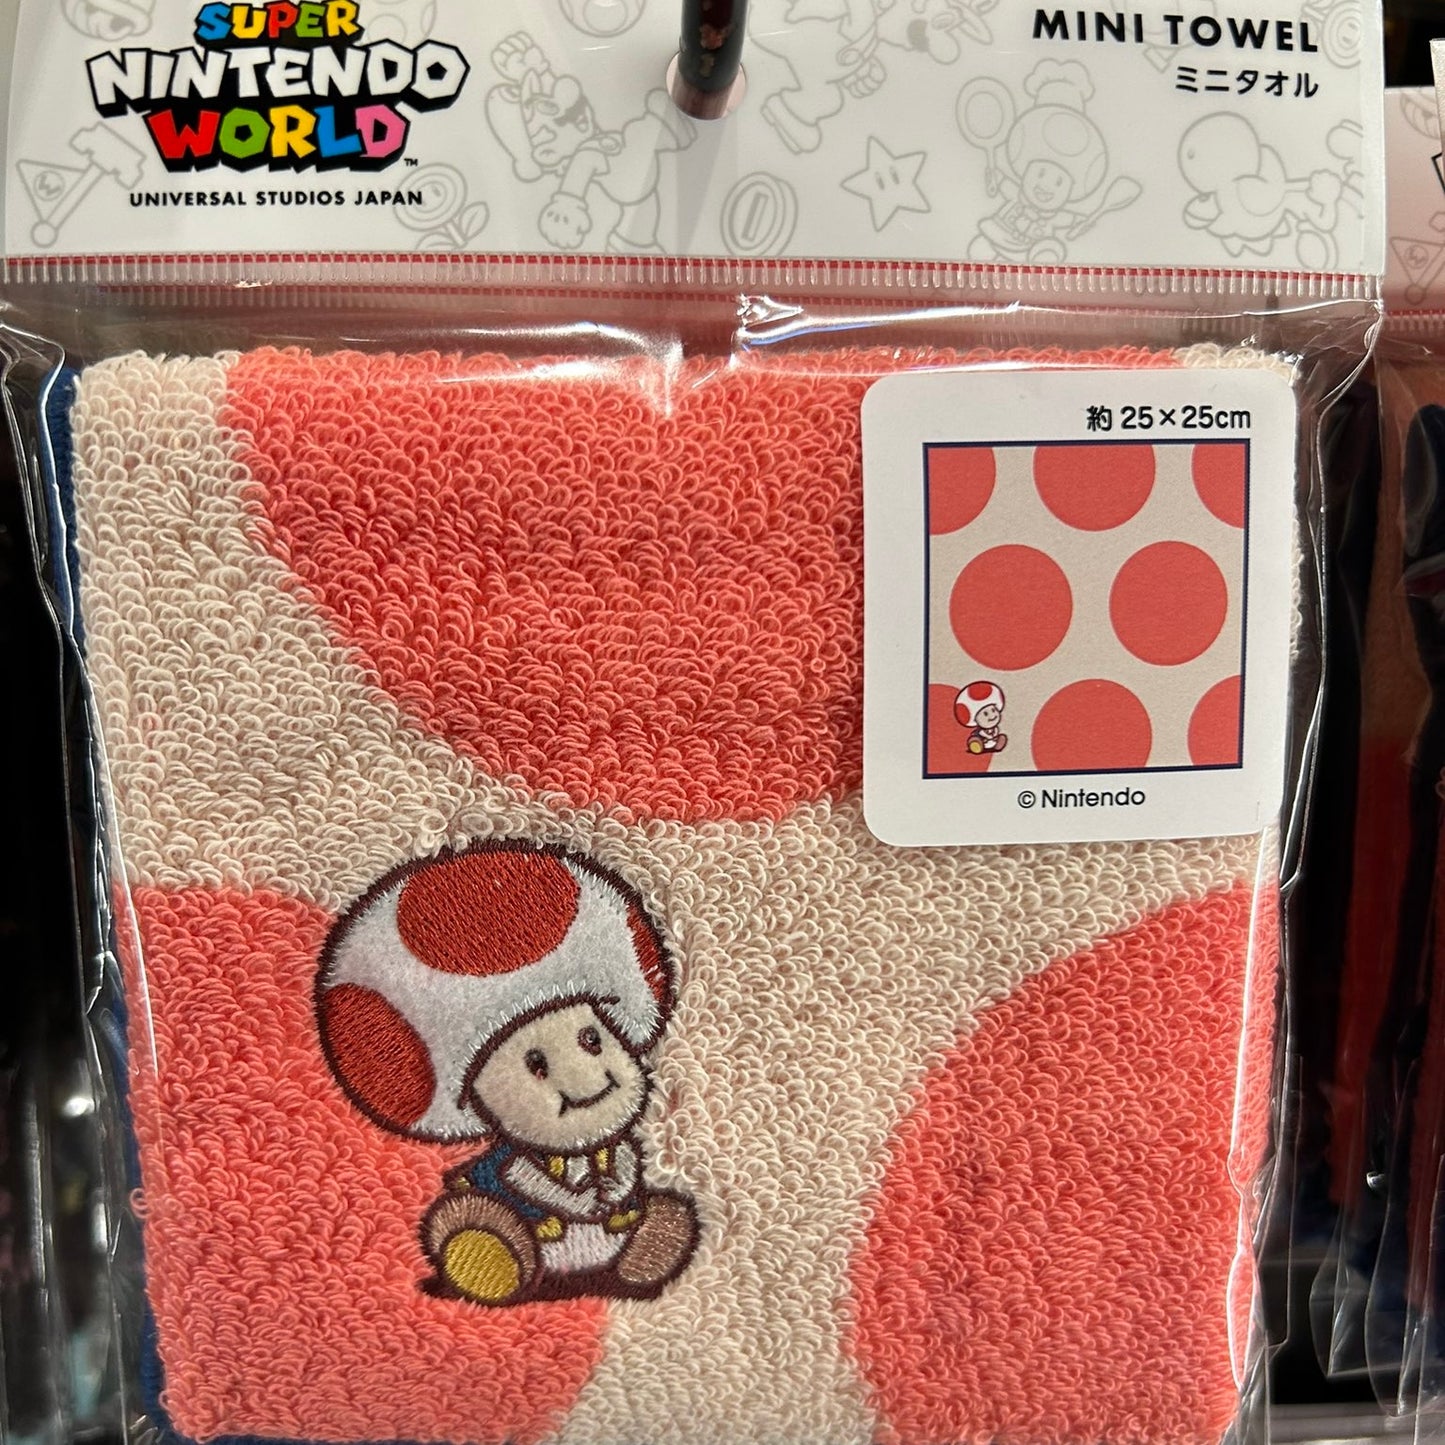 【訂貨】USJ Nintendo World 小毛巾 兒童水杯